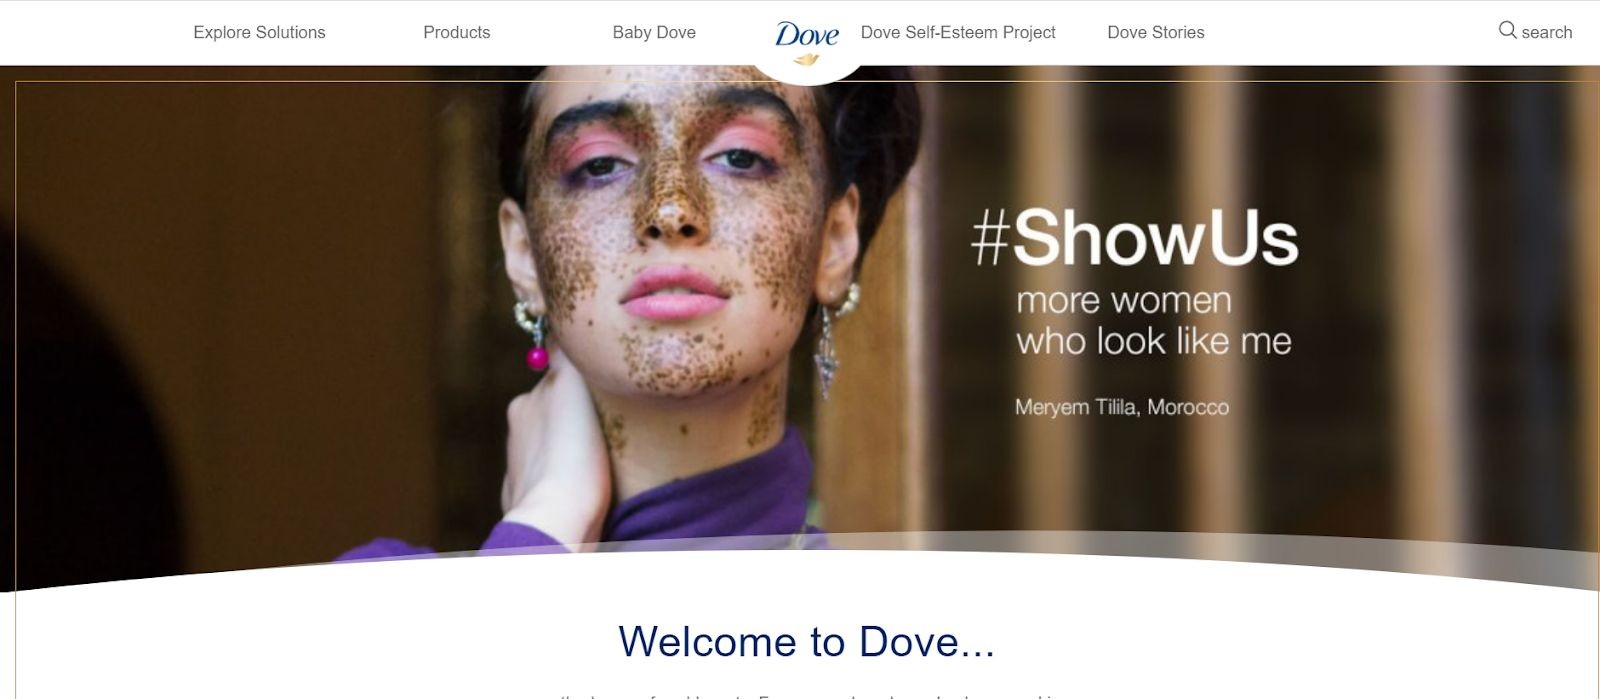 Marketing Strategies of Dove - Social Media Presence - The Dove Website